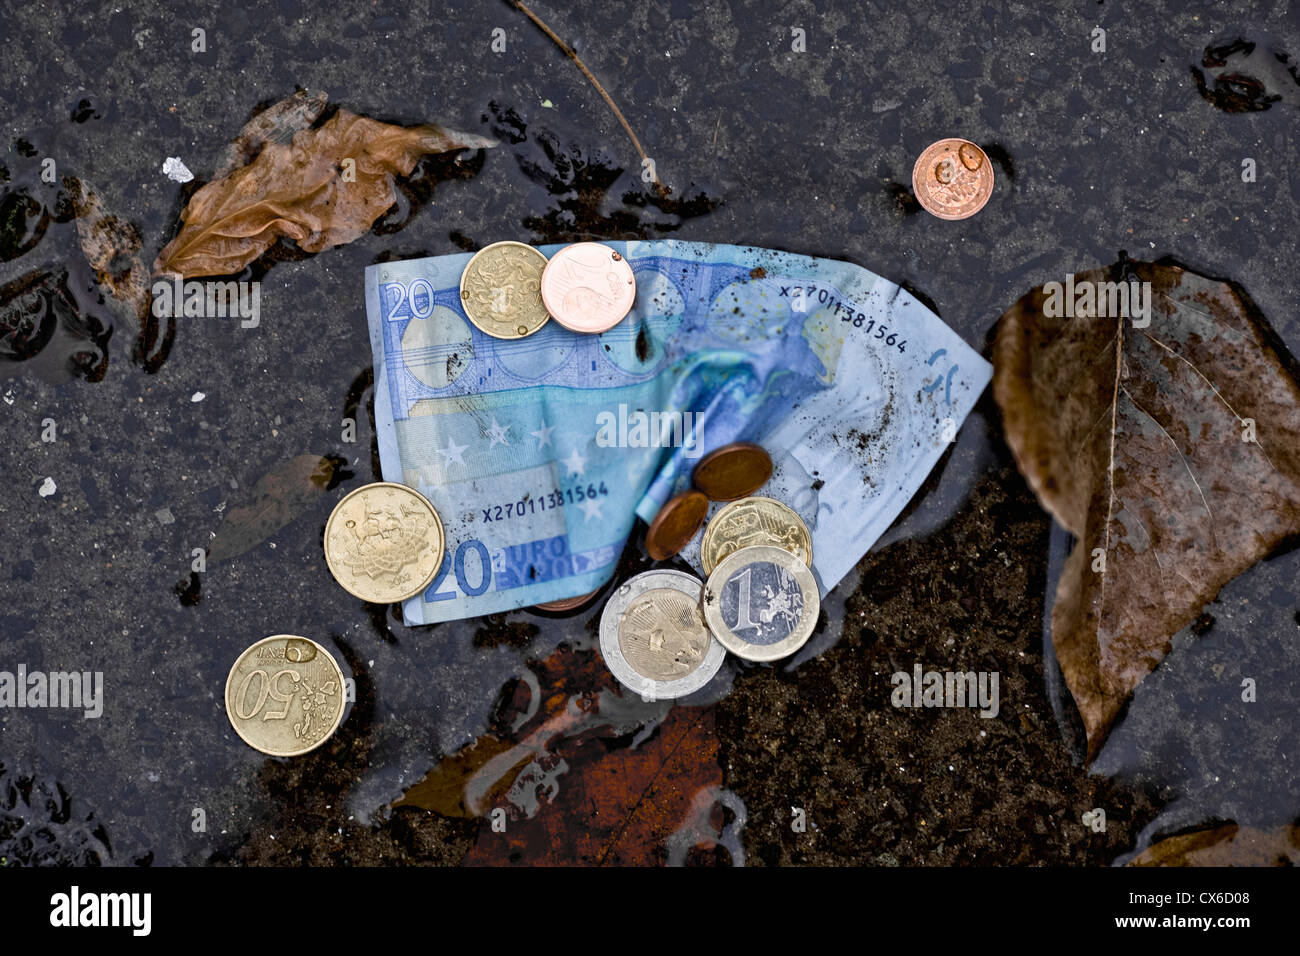 Un billet de vingt euros et des pièces en euros dans une flaque Banque D'Images